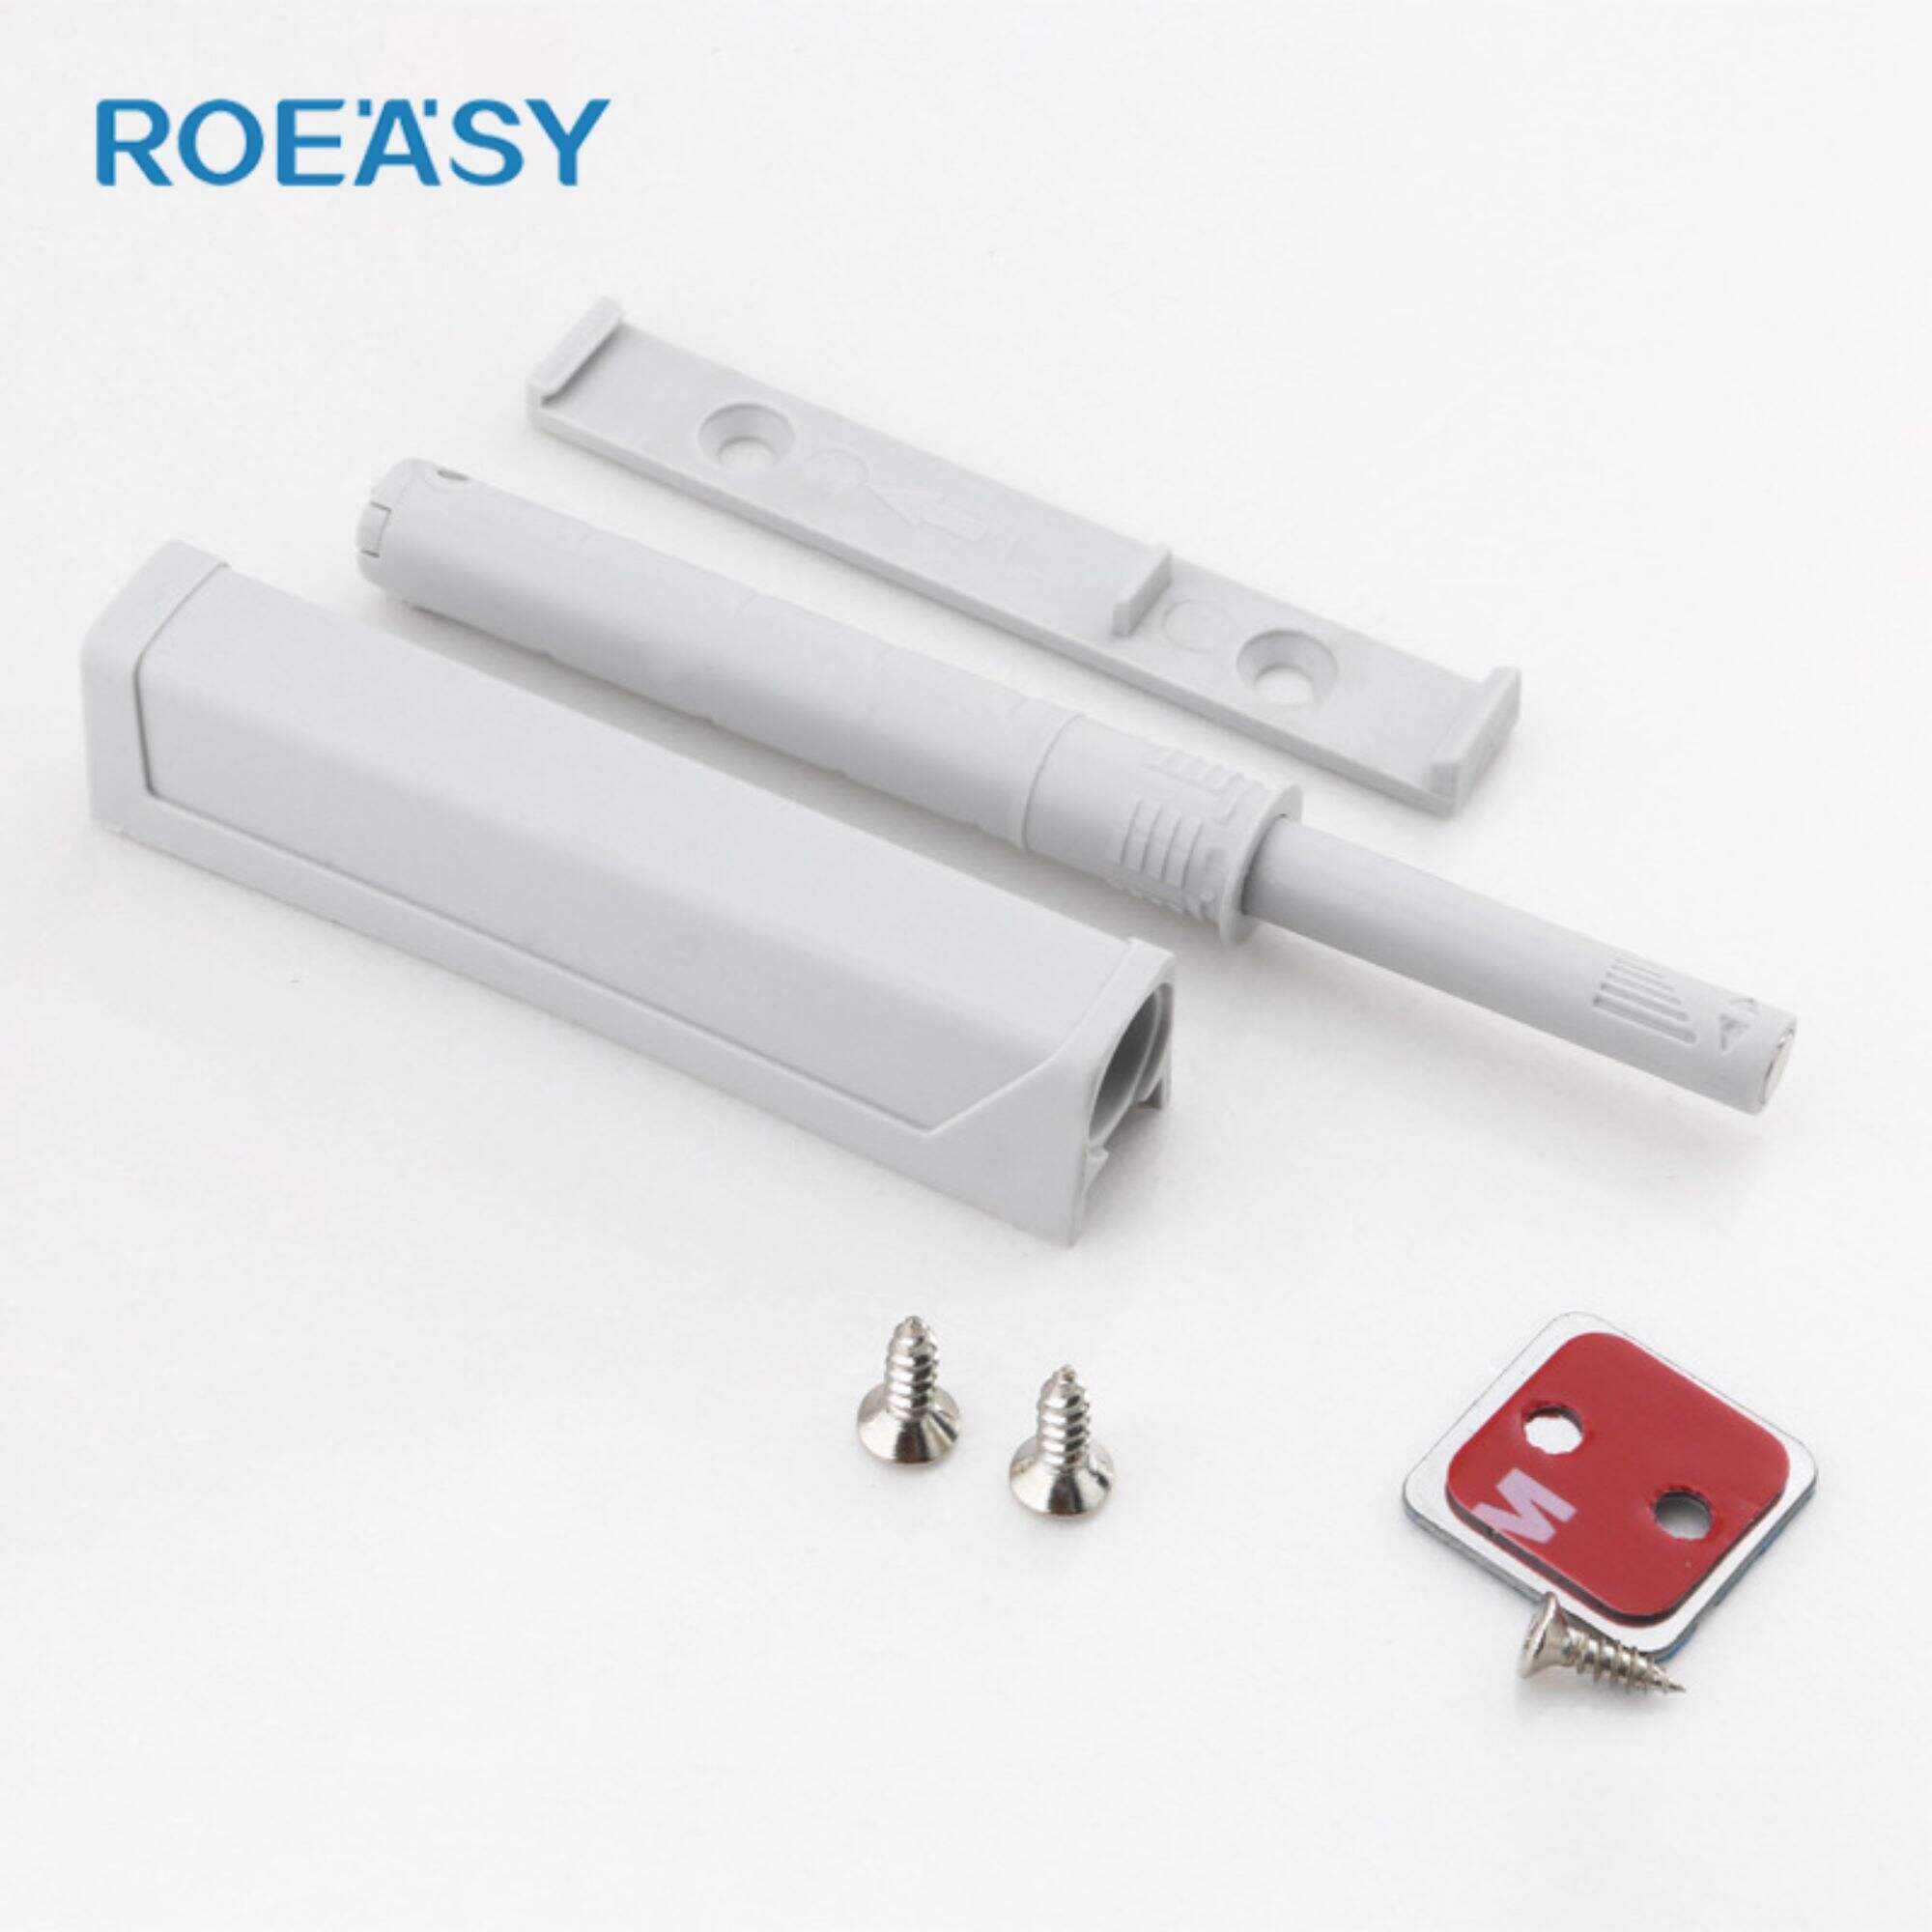 Roeasy RT021A Magnetisk fanger skyv for å åpne skapdørlåser